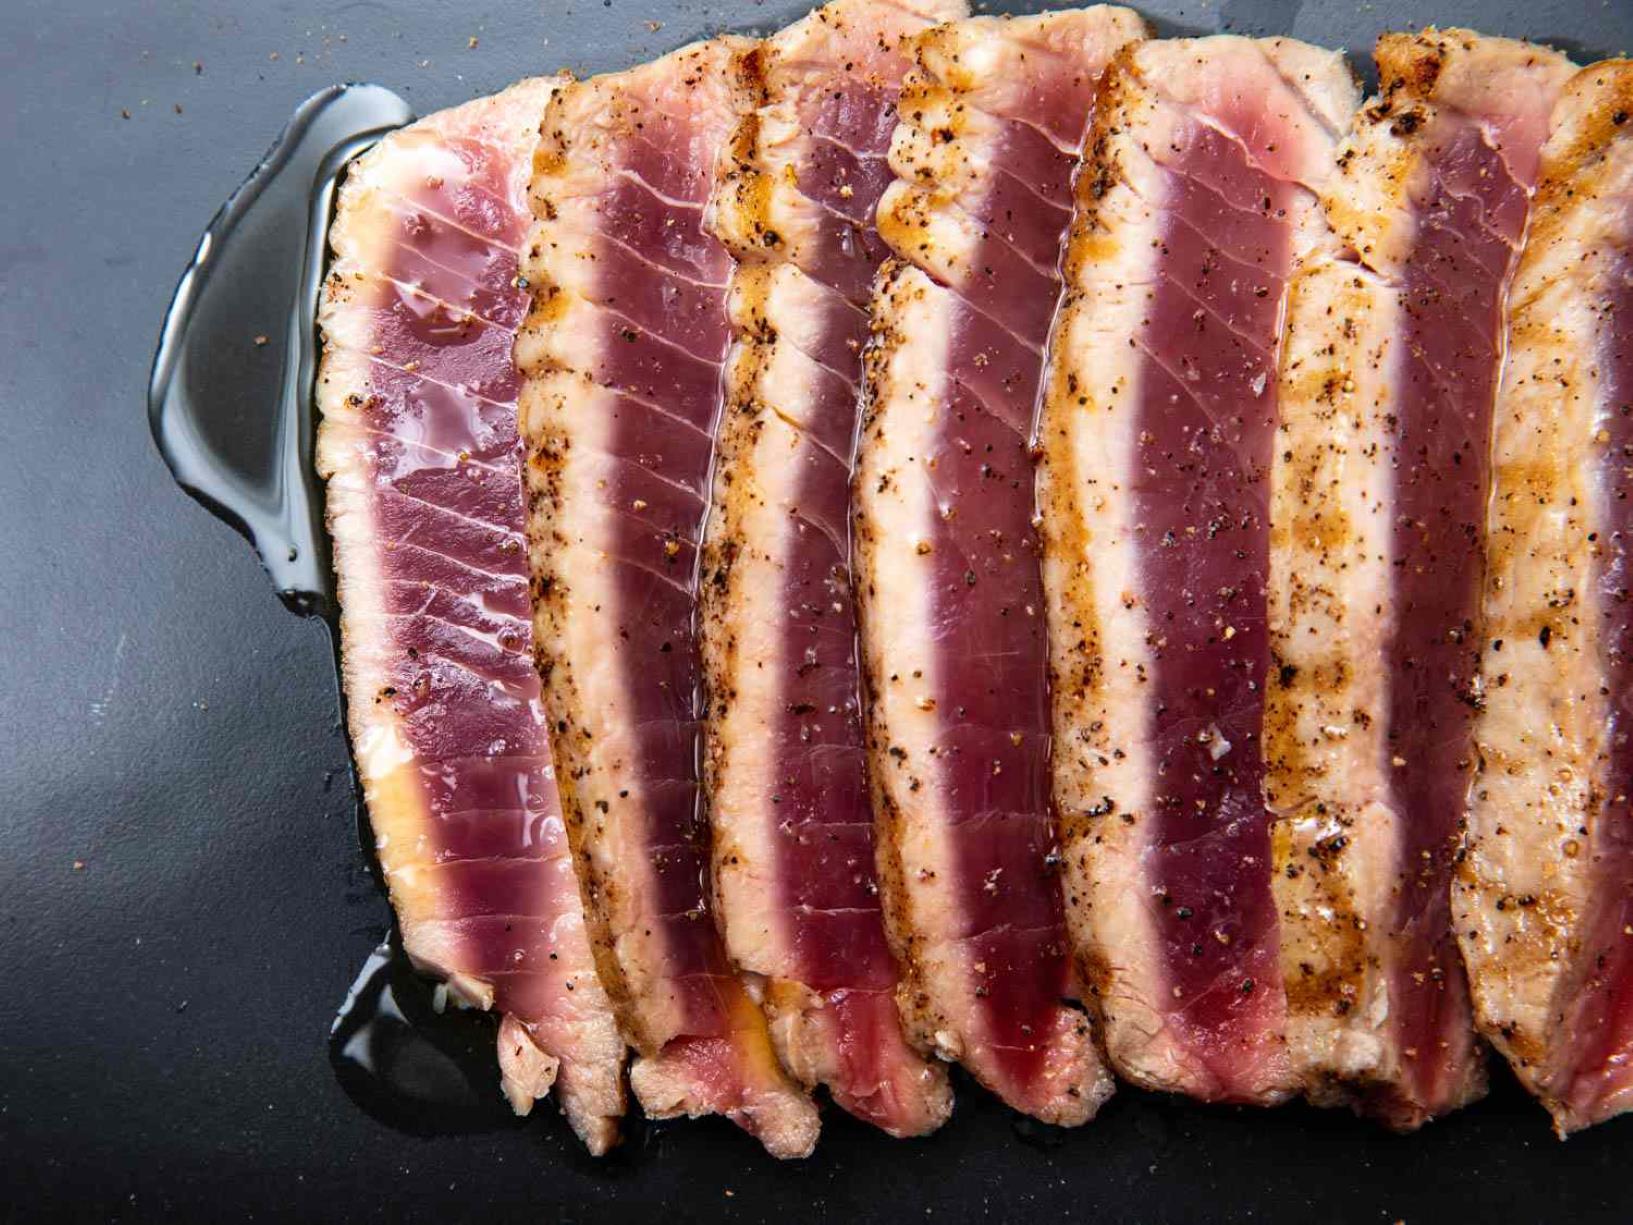 18-tuna-steak-nutrition-facts